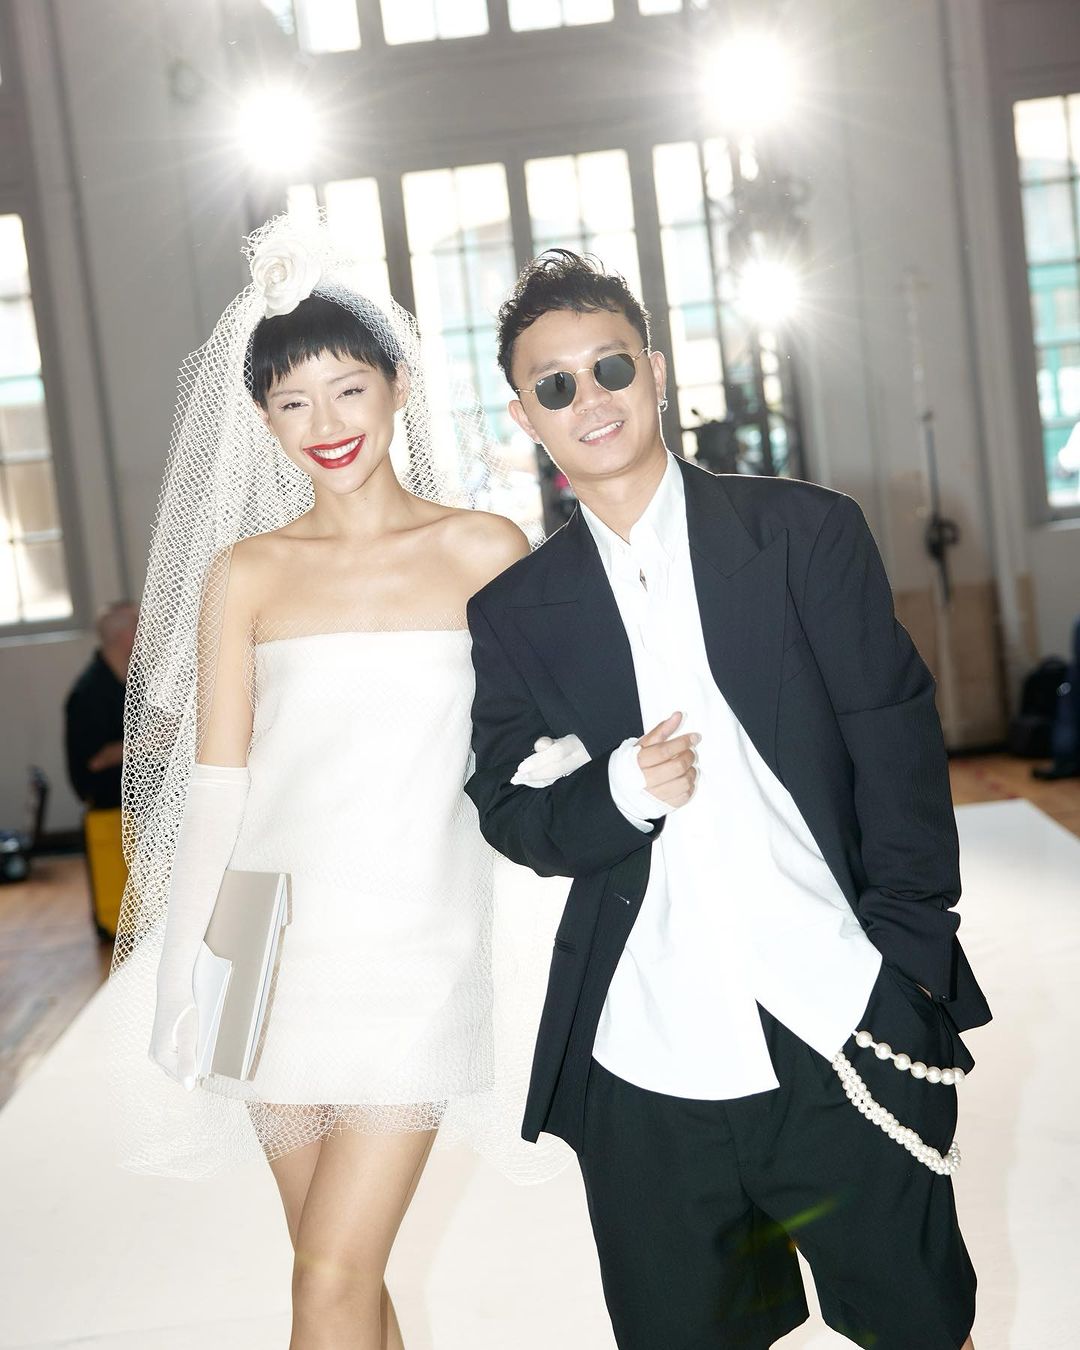  'Cô Em Trendy' Khánh Linh và bạn trai chụp ảnh cưới ngay trong show diễn tại Paris - Ảnh 2.